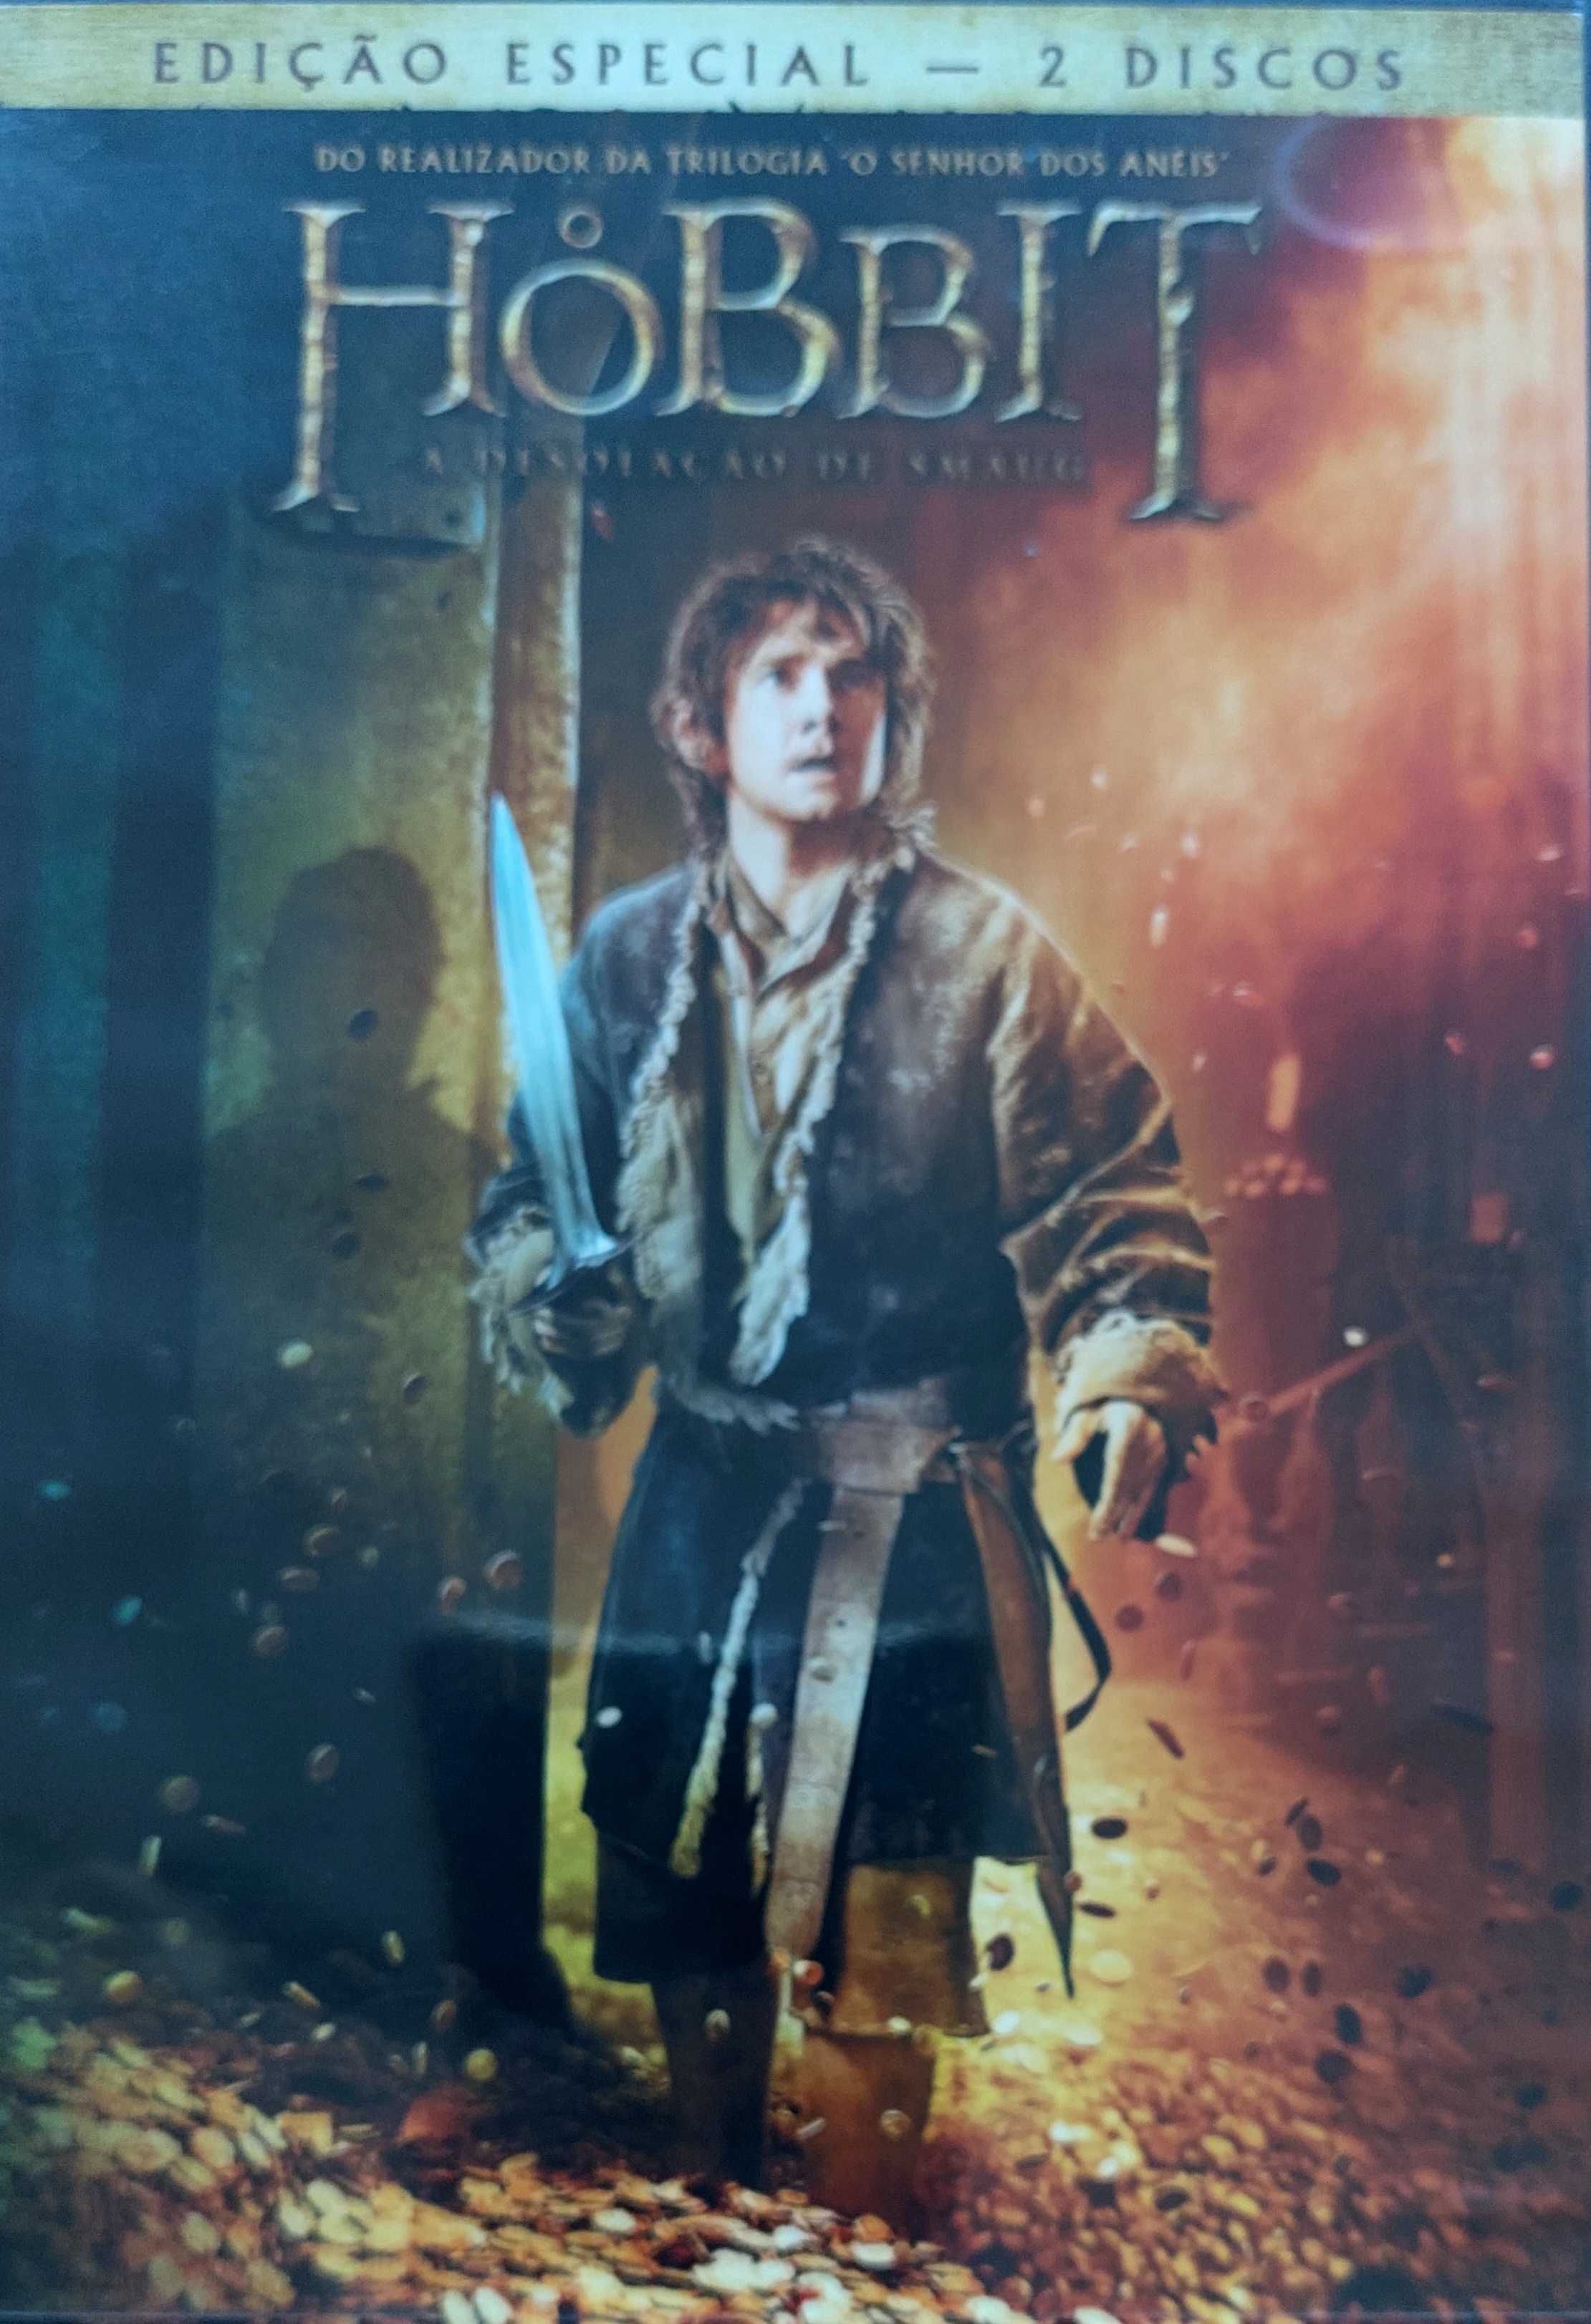 Dvd Hobbit edição especial